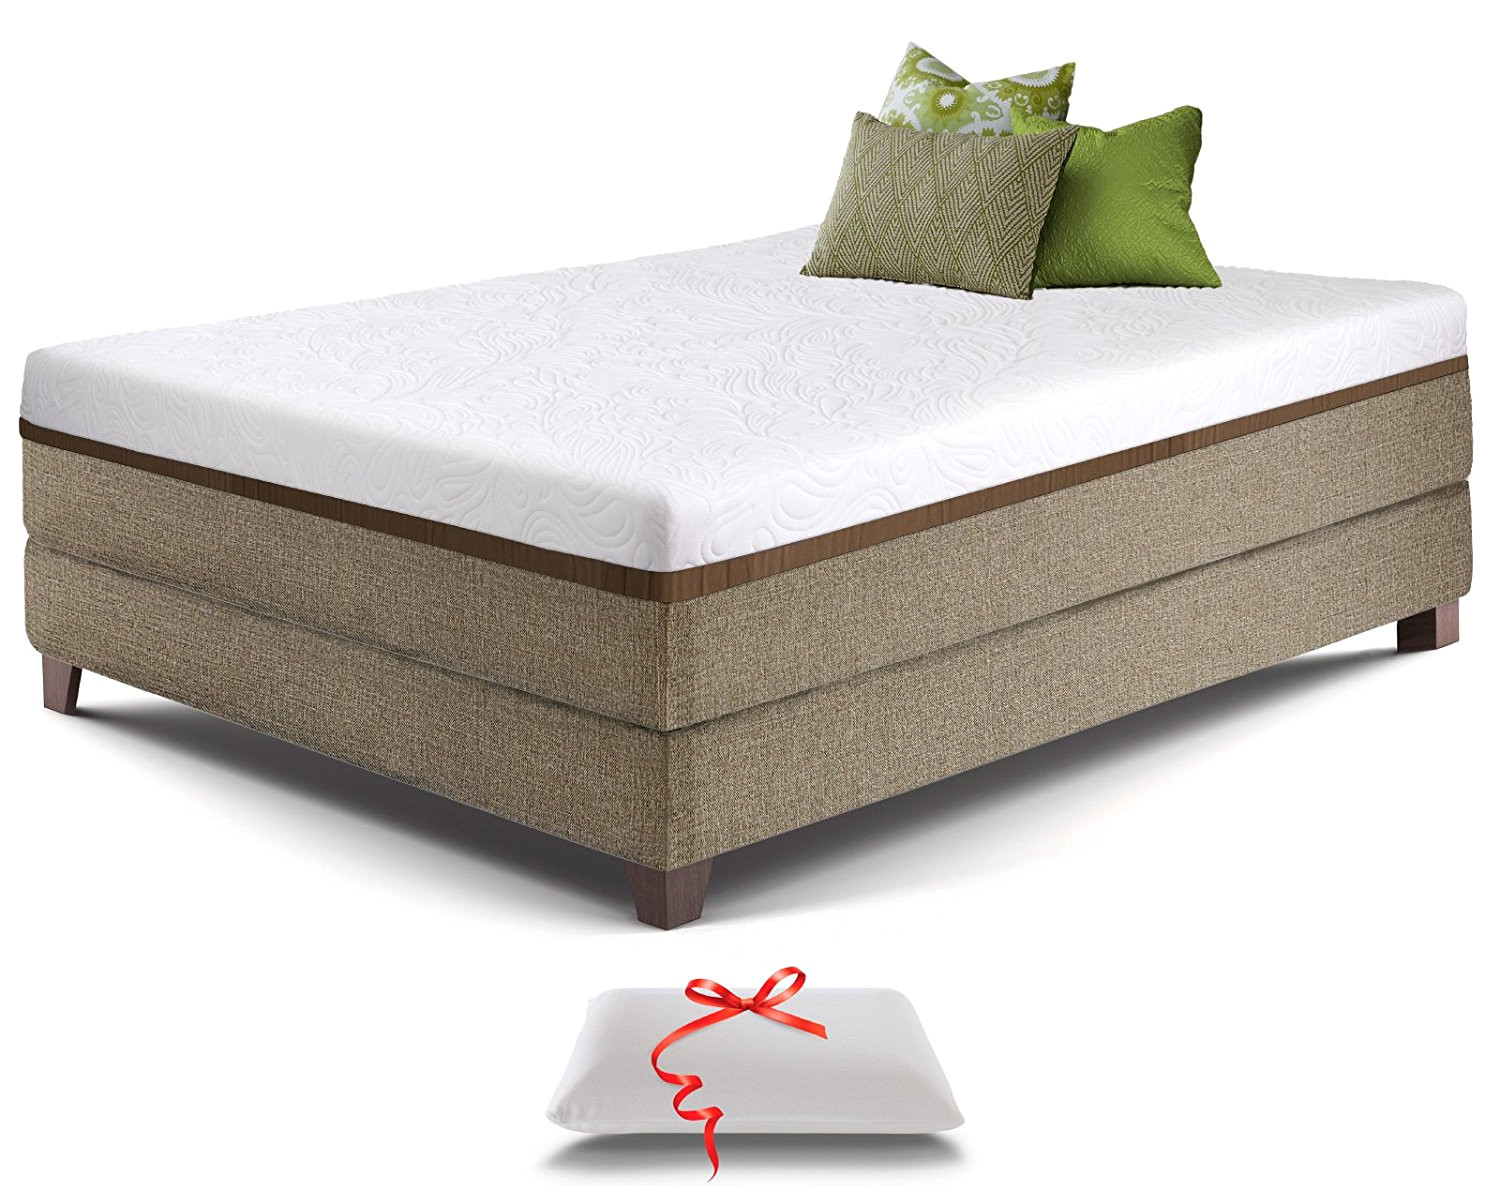 amazon com live and sleep ultra california king mattress gel memory foam mattress 12 inch medium firm luxury form pillow certipur certified